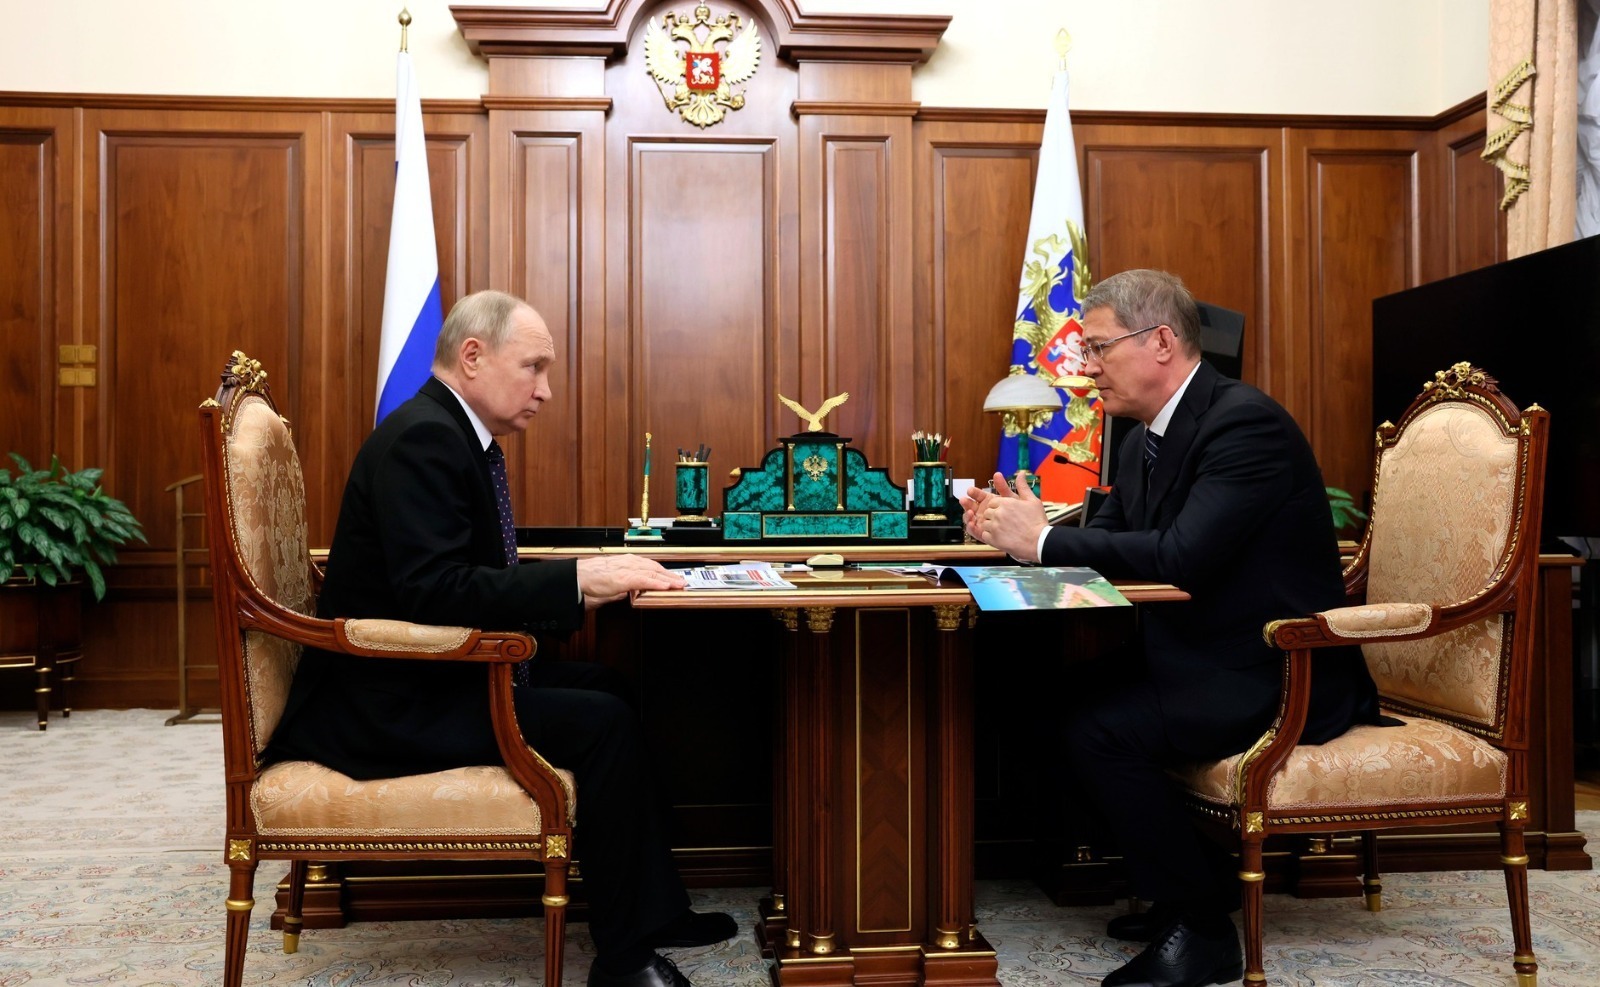 Путин выразил поддержку Хабирову на второй срок: результаты работы главы Башкирии признаны положительными